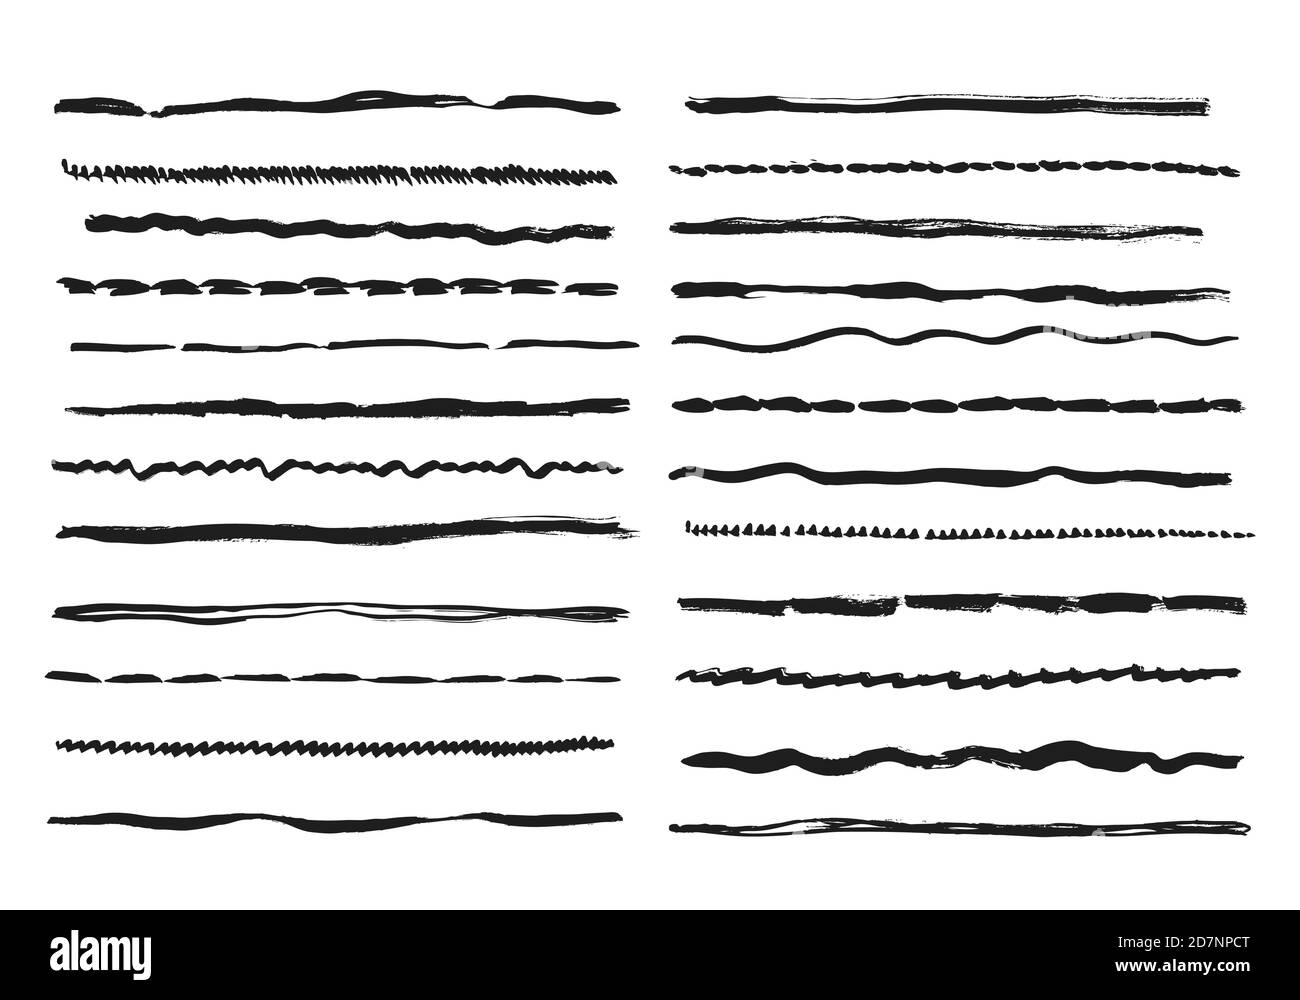 Skizzenlinien. Bleistift strukturierte Doodle Freihand Linie Striche Kreide Scribble schwarze Tinte Linie isoliert Vektor-Set. Illustration von Freihand Linienstreifen, Graphit Zeichnung Kreativität Stock Vektor